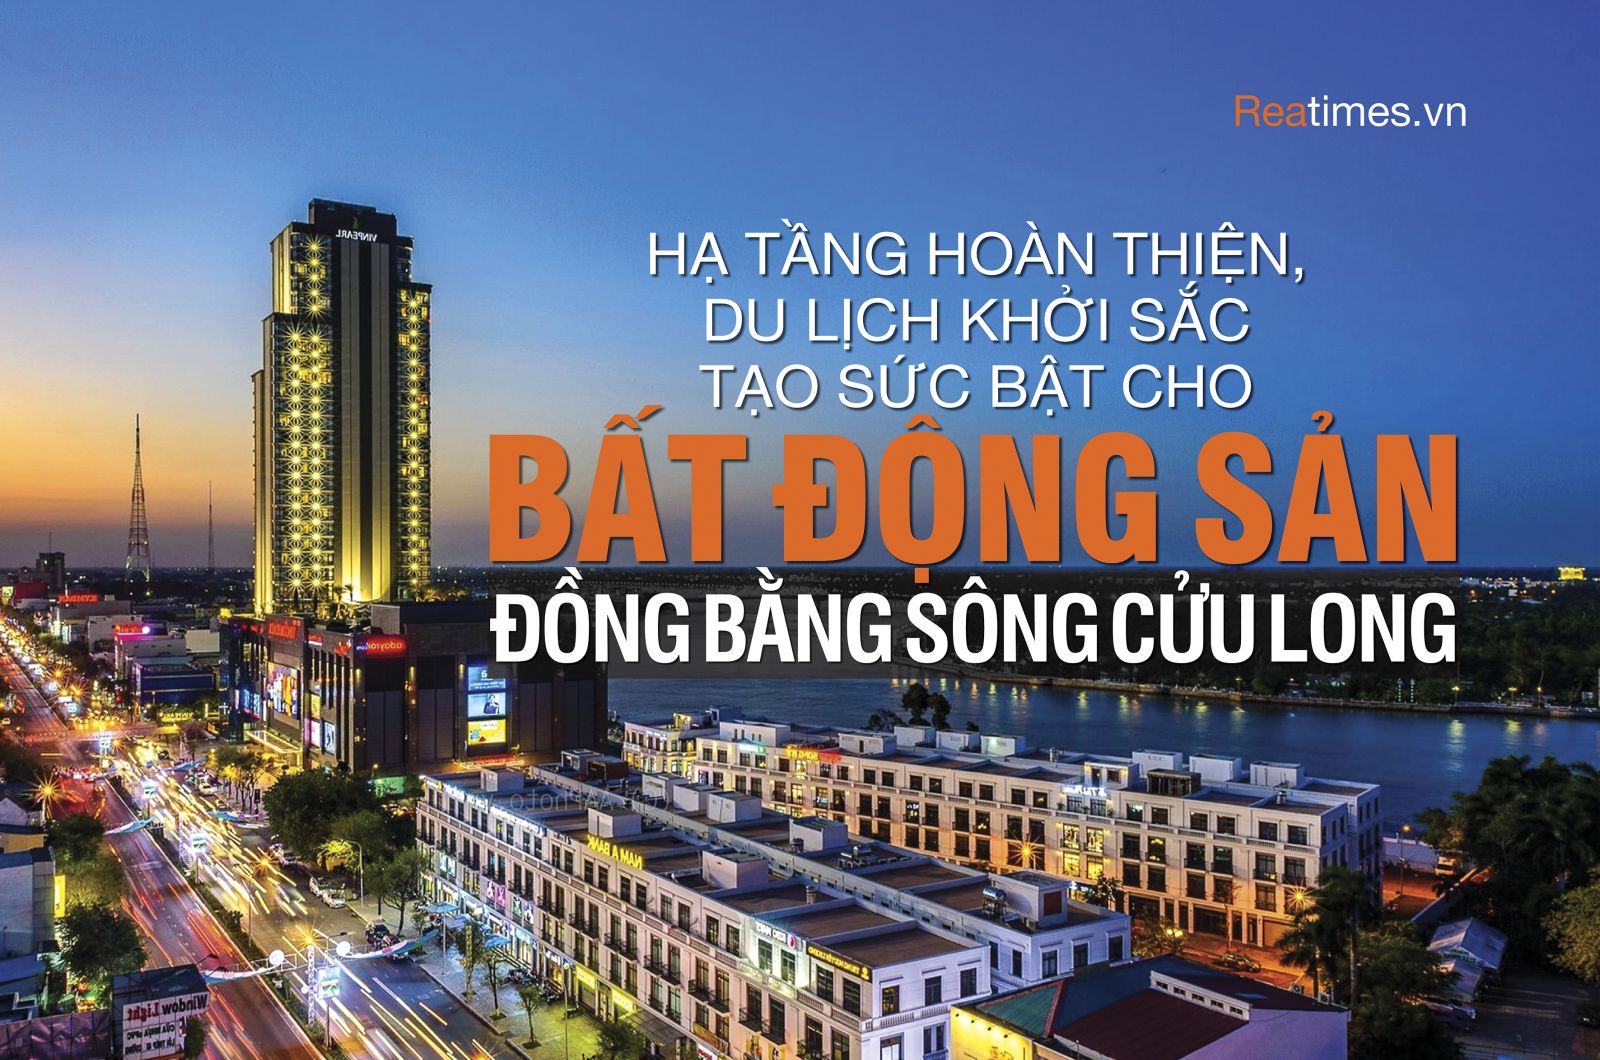 Hạ tầng hoàn thiện, du lịch khởi sắc tạo sức bật cho bất động sản Đồng bằng sông Cửu Long